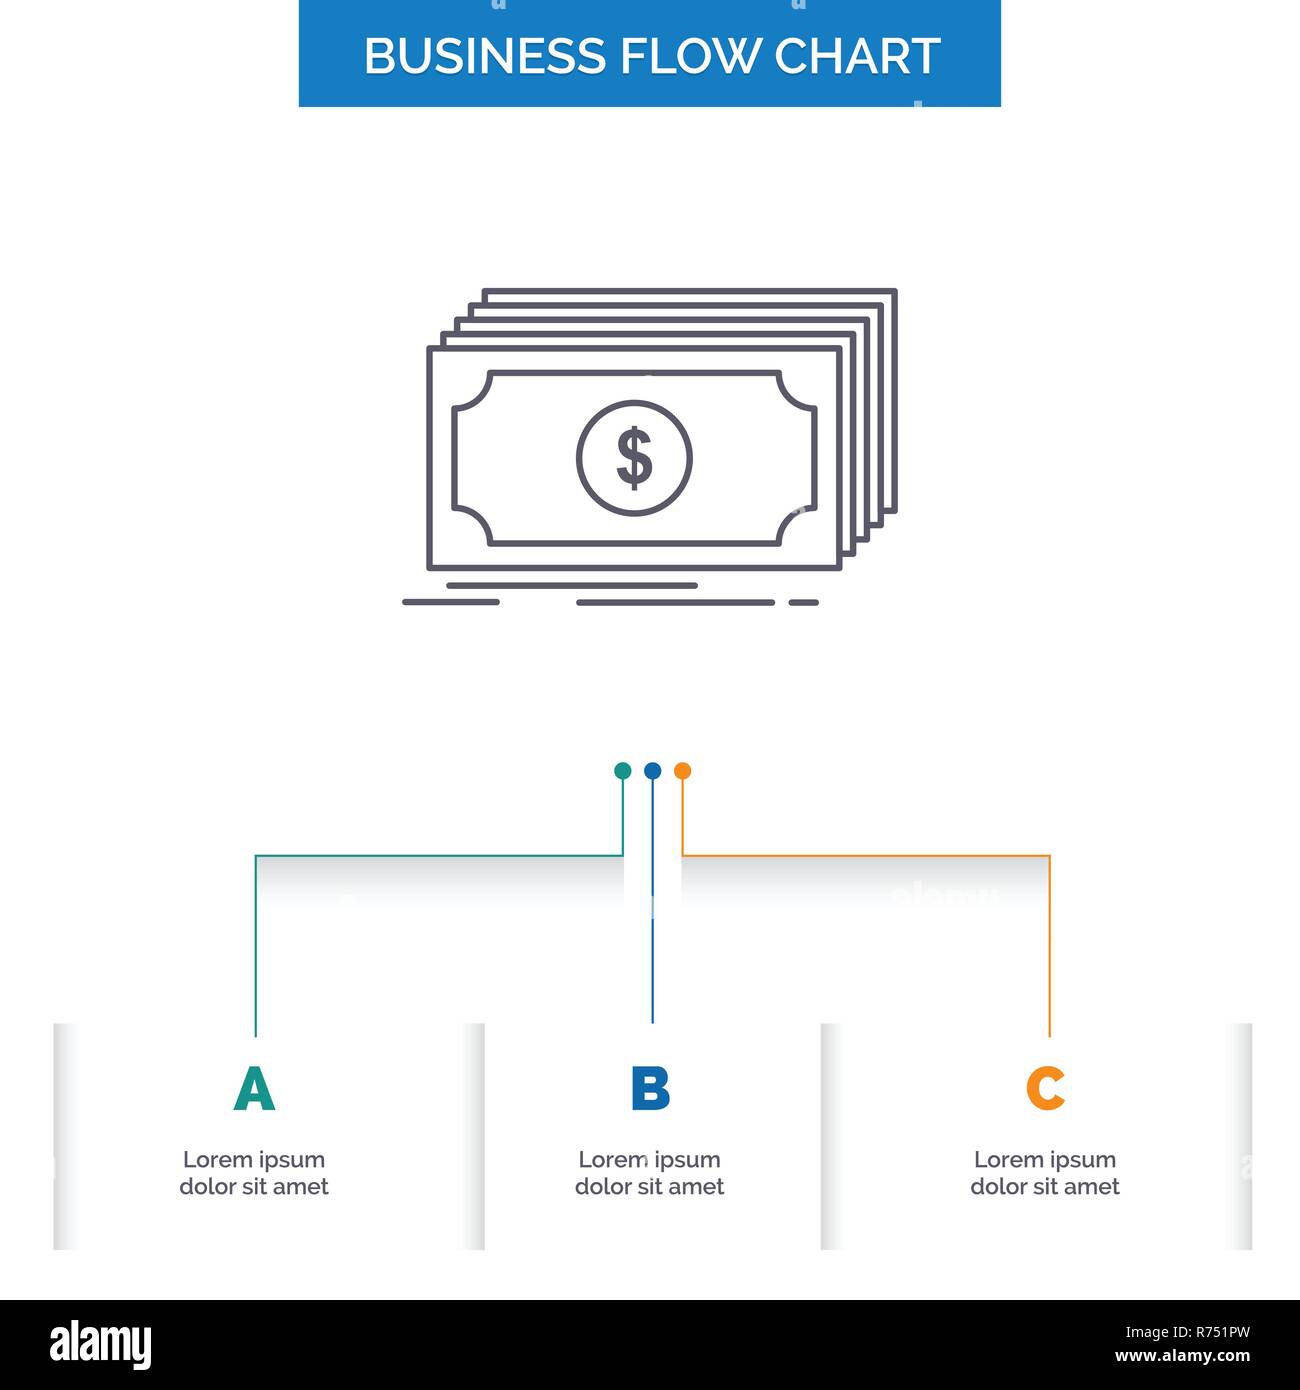 Financial Flow Chart Template